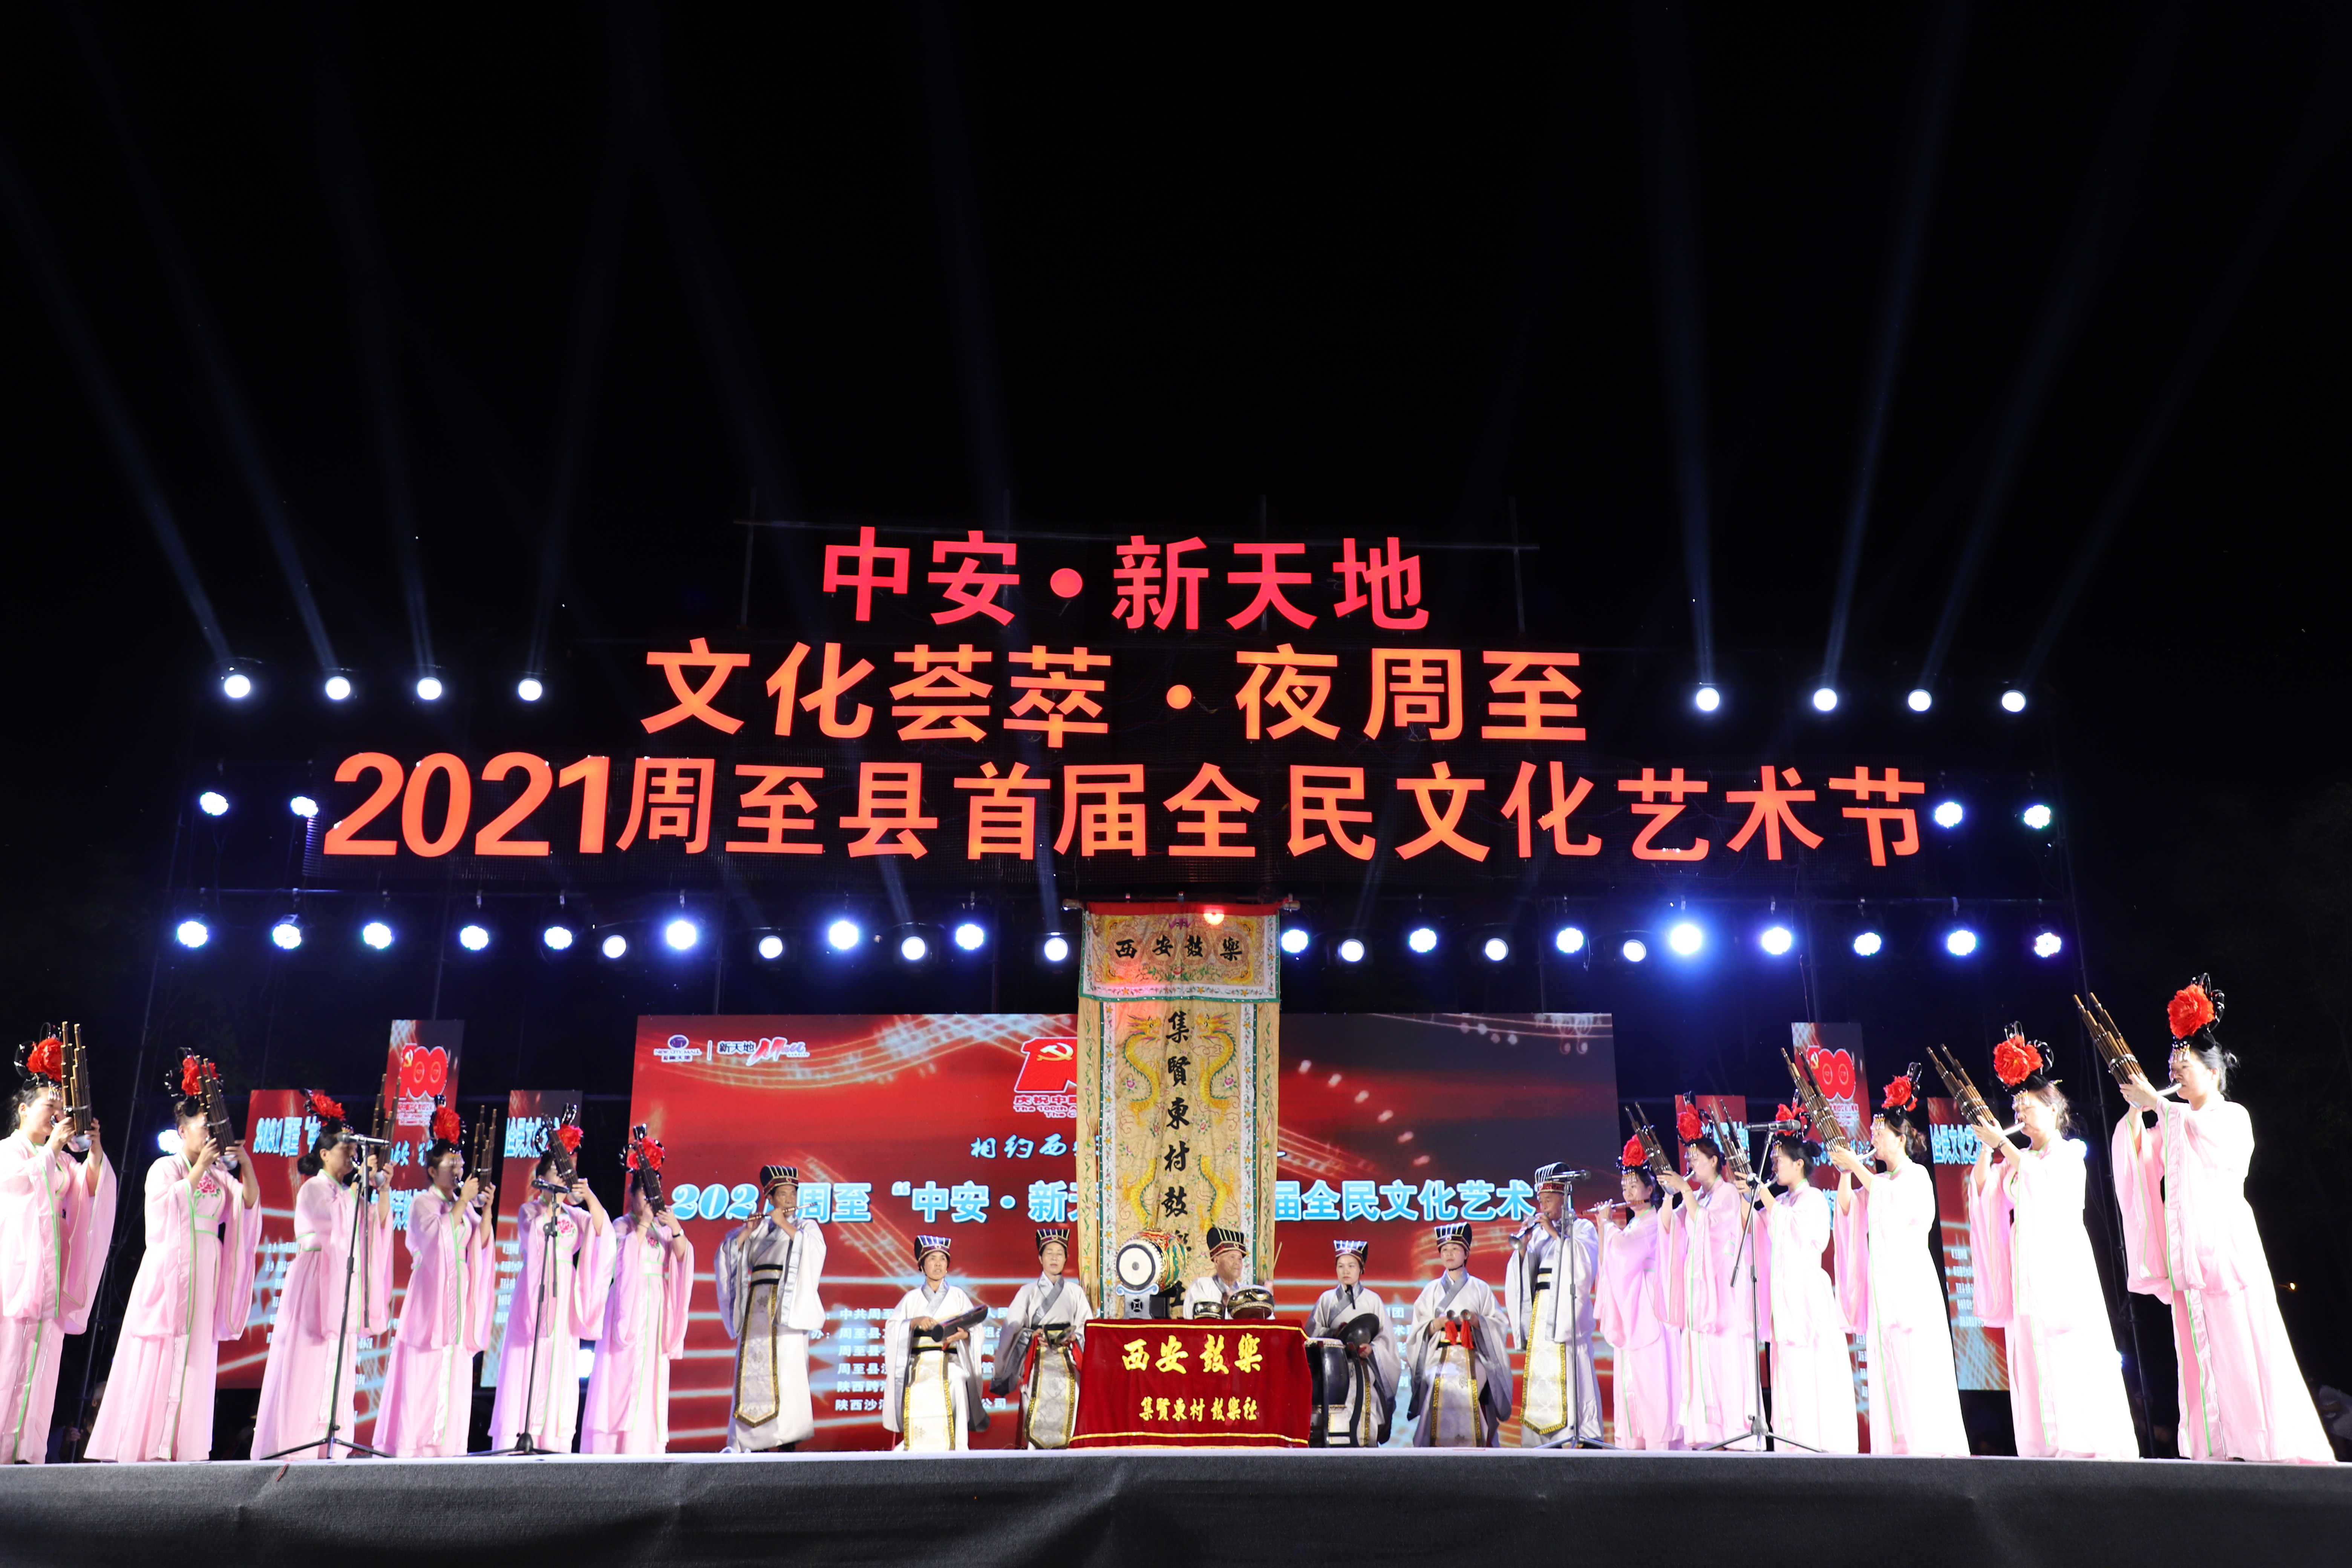 2021年7月28日南参加“周至县首届文化艺术节”演出-1.jpg